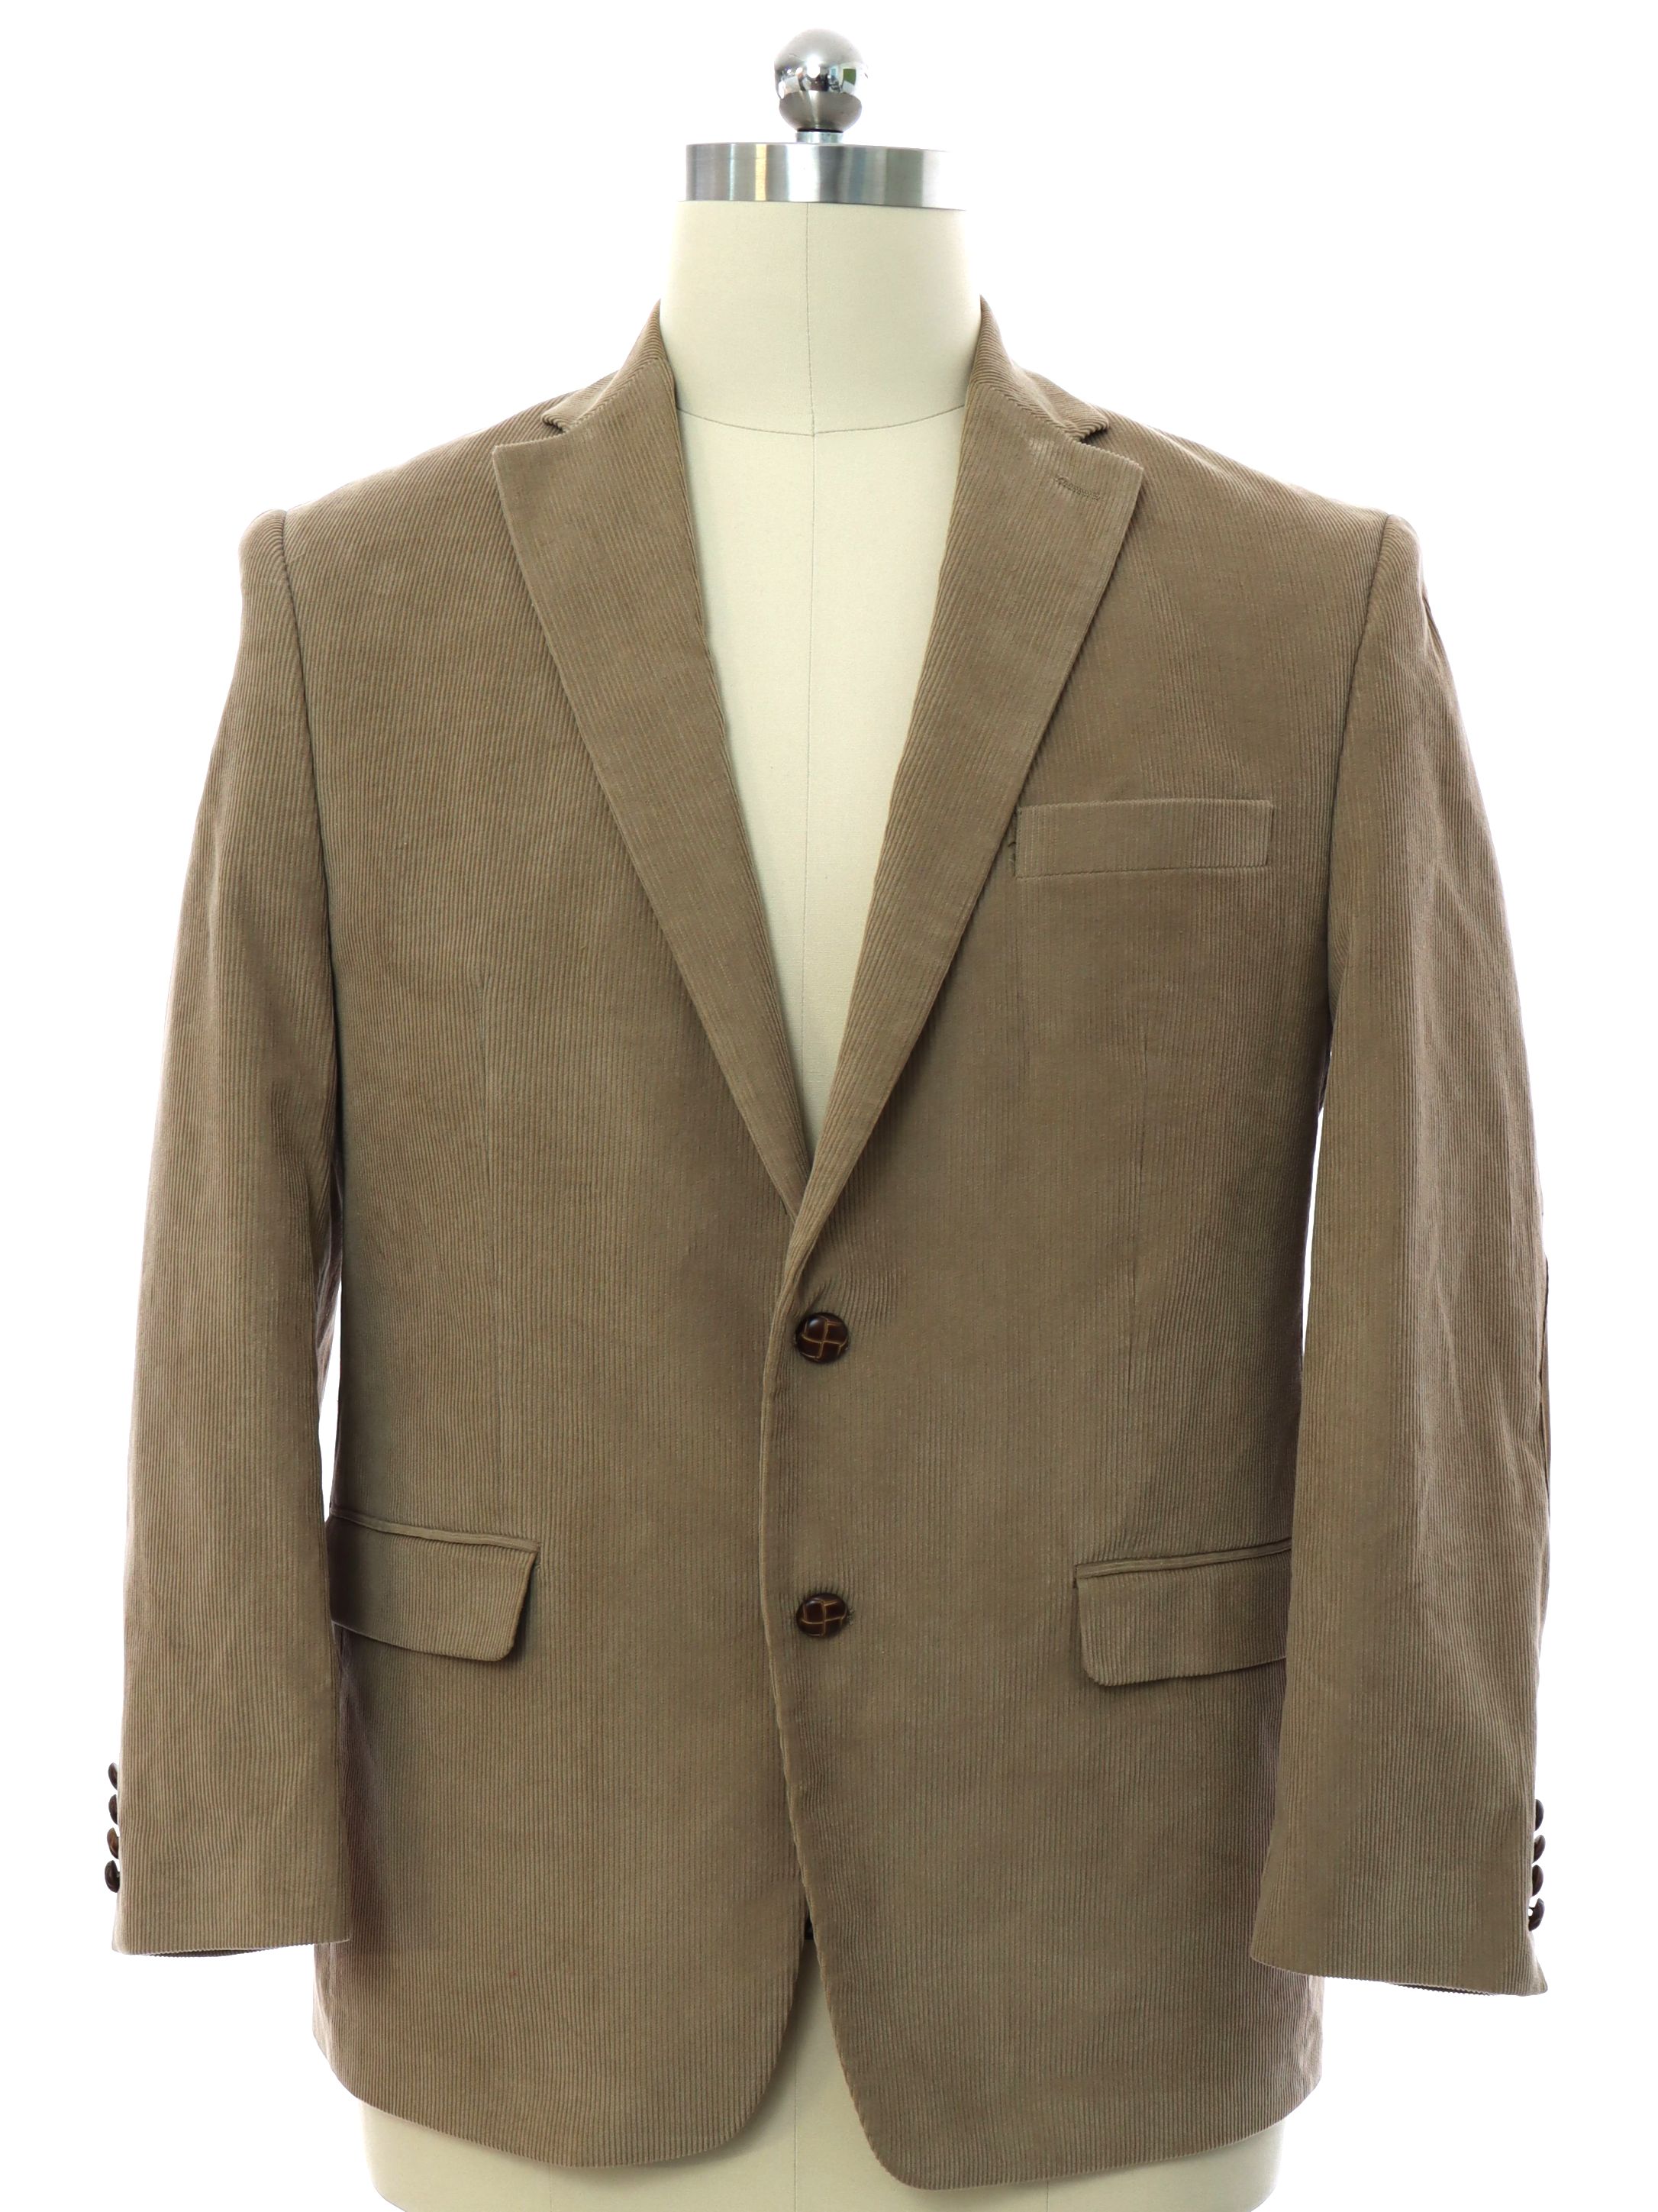 Jacket: 90s -Chaps (Ralph Lauren)- Mens tan background cotton